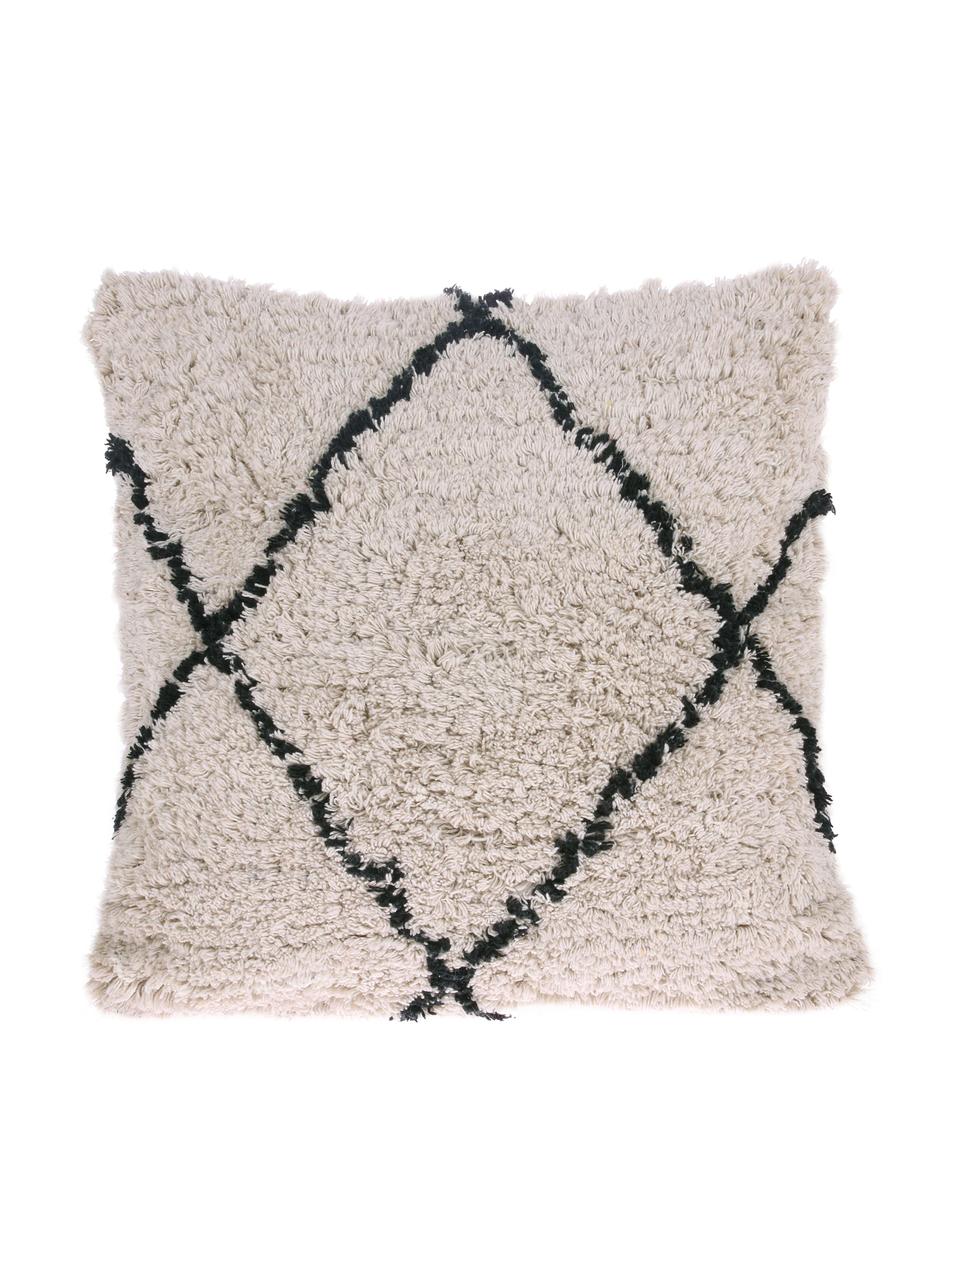 Kissen Diamond mit getufteter Oberfläche, mit Inlett, 100% Baumwolle, Gebrochenes Weiss, Schwarz, 50 x 50 cm